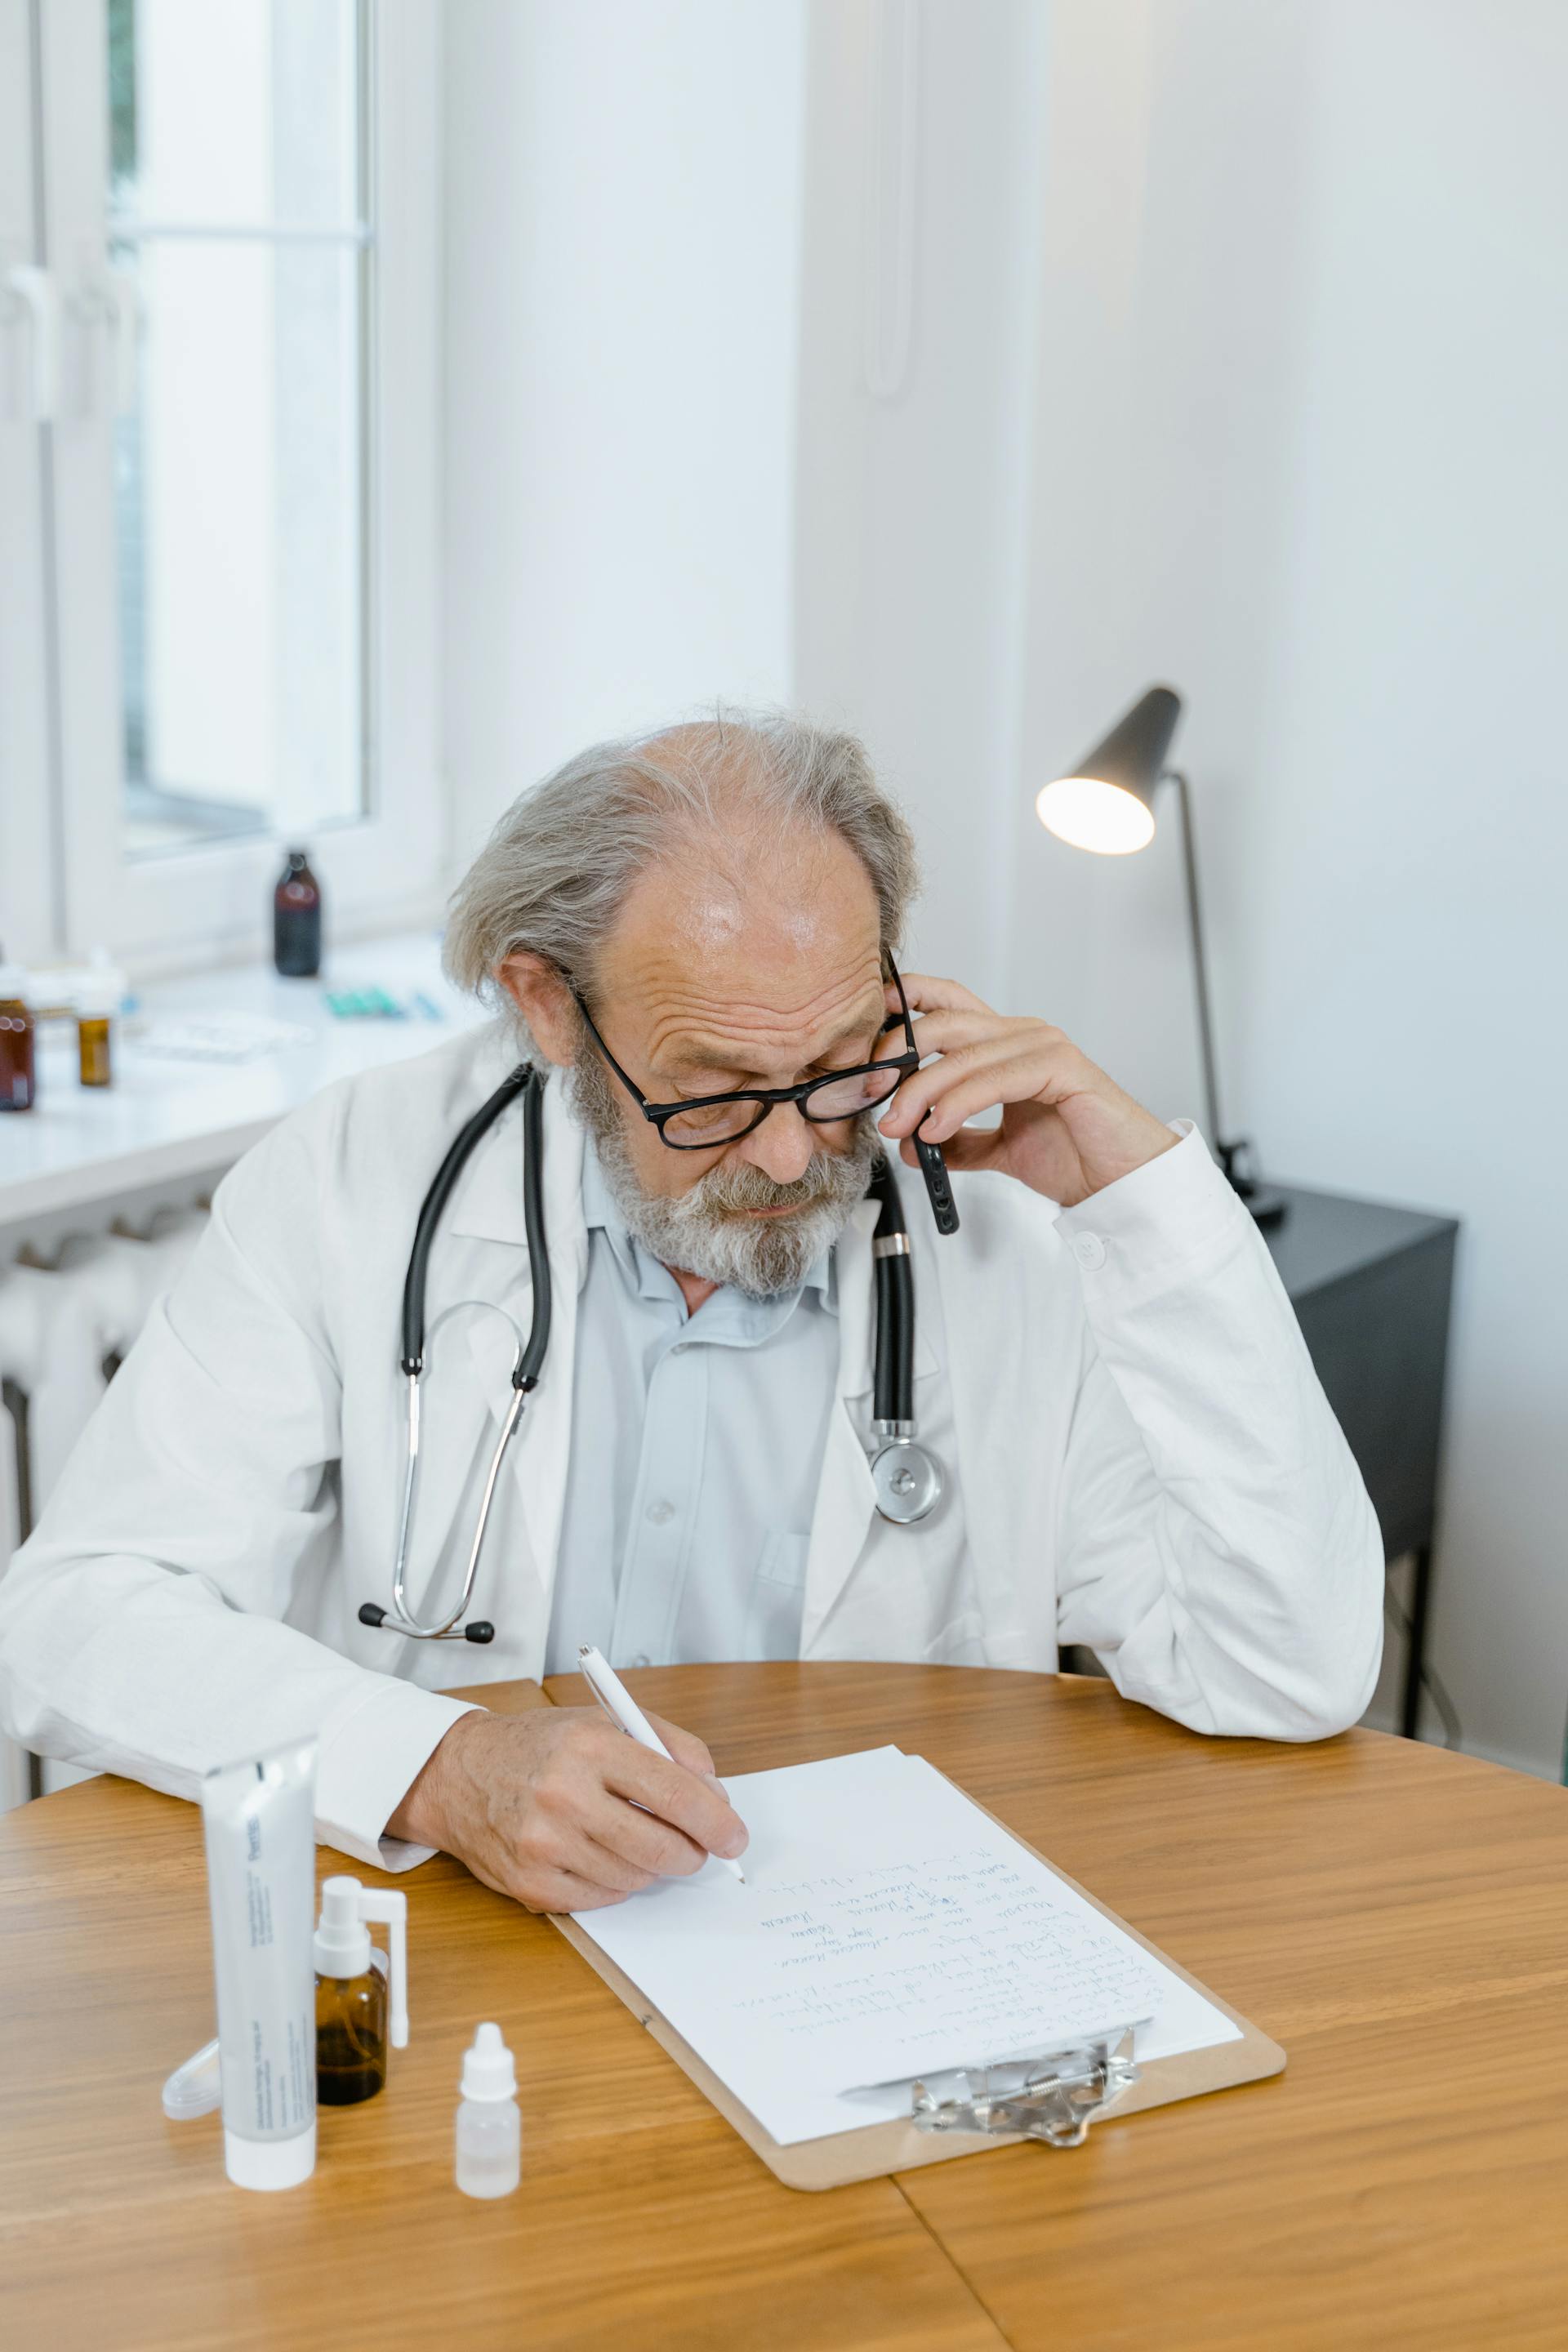 Un médecin au téléphone et en train d'écrire | Source : Pexels